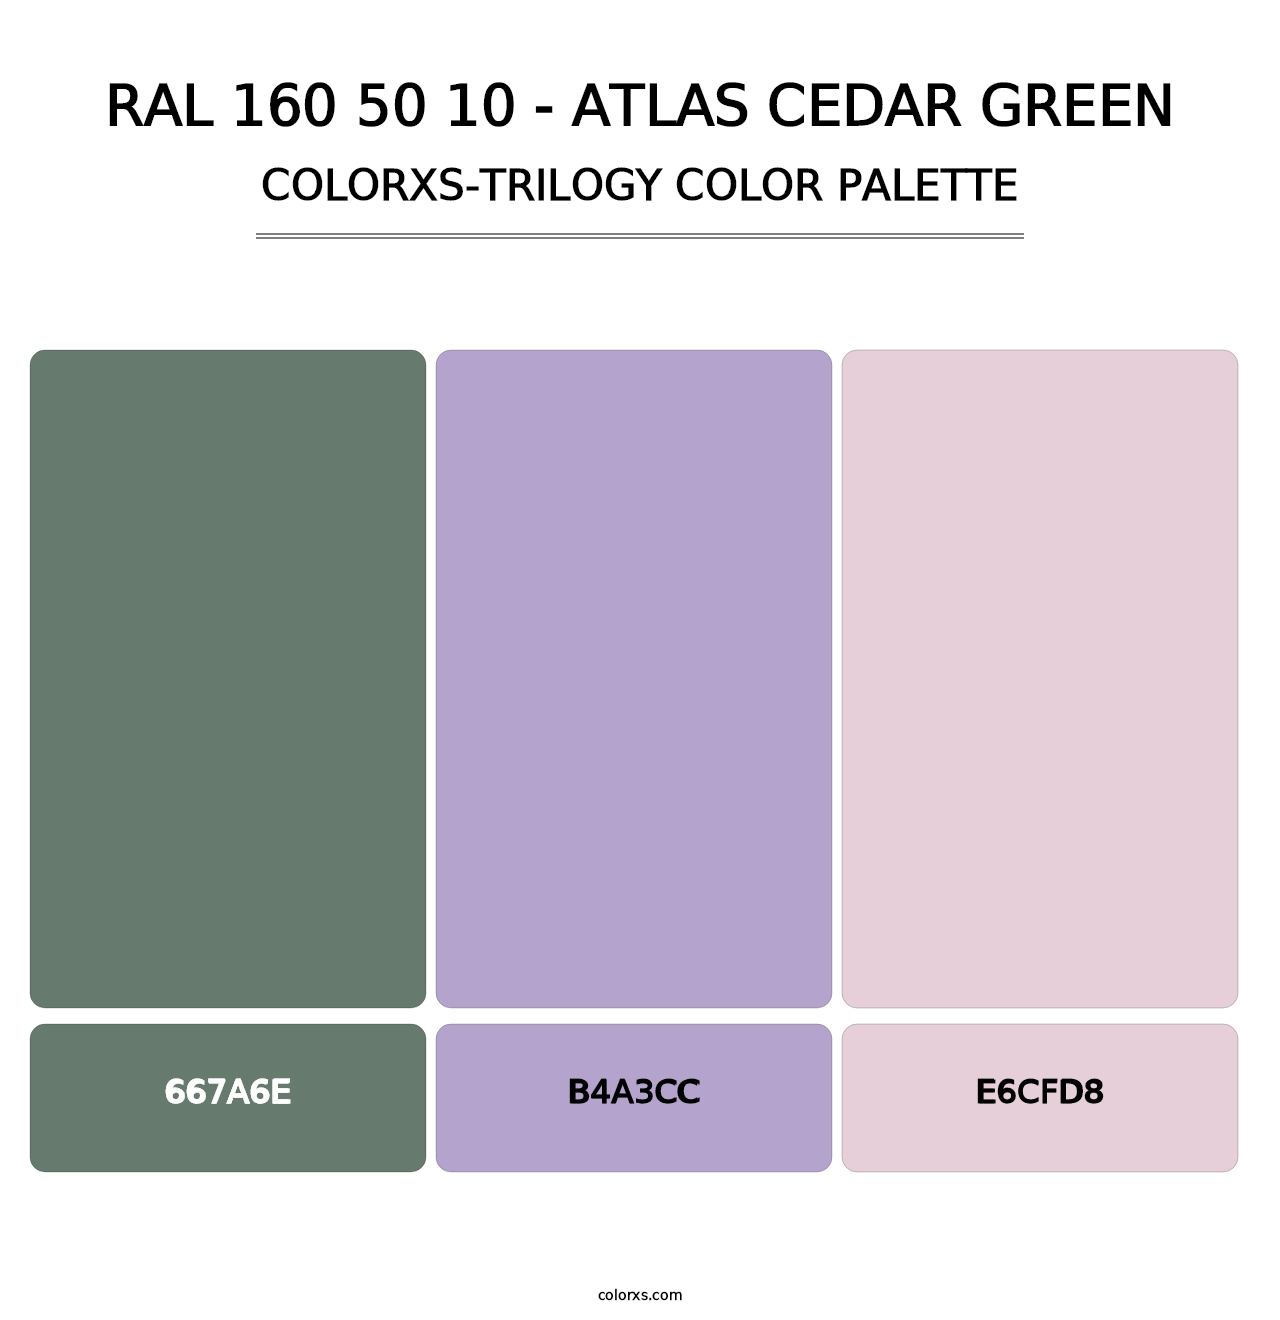 RAL 160 50 10 - Atlas Cedar Green - Colorxs Trilogy Palette